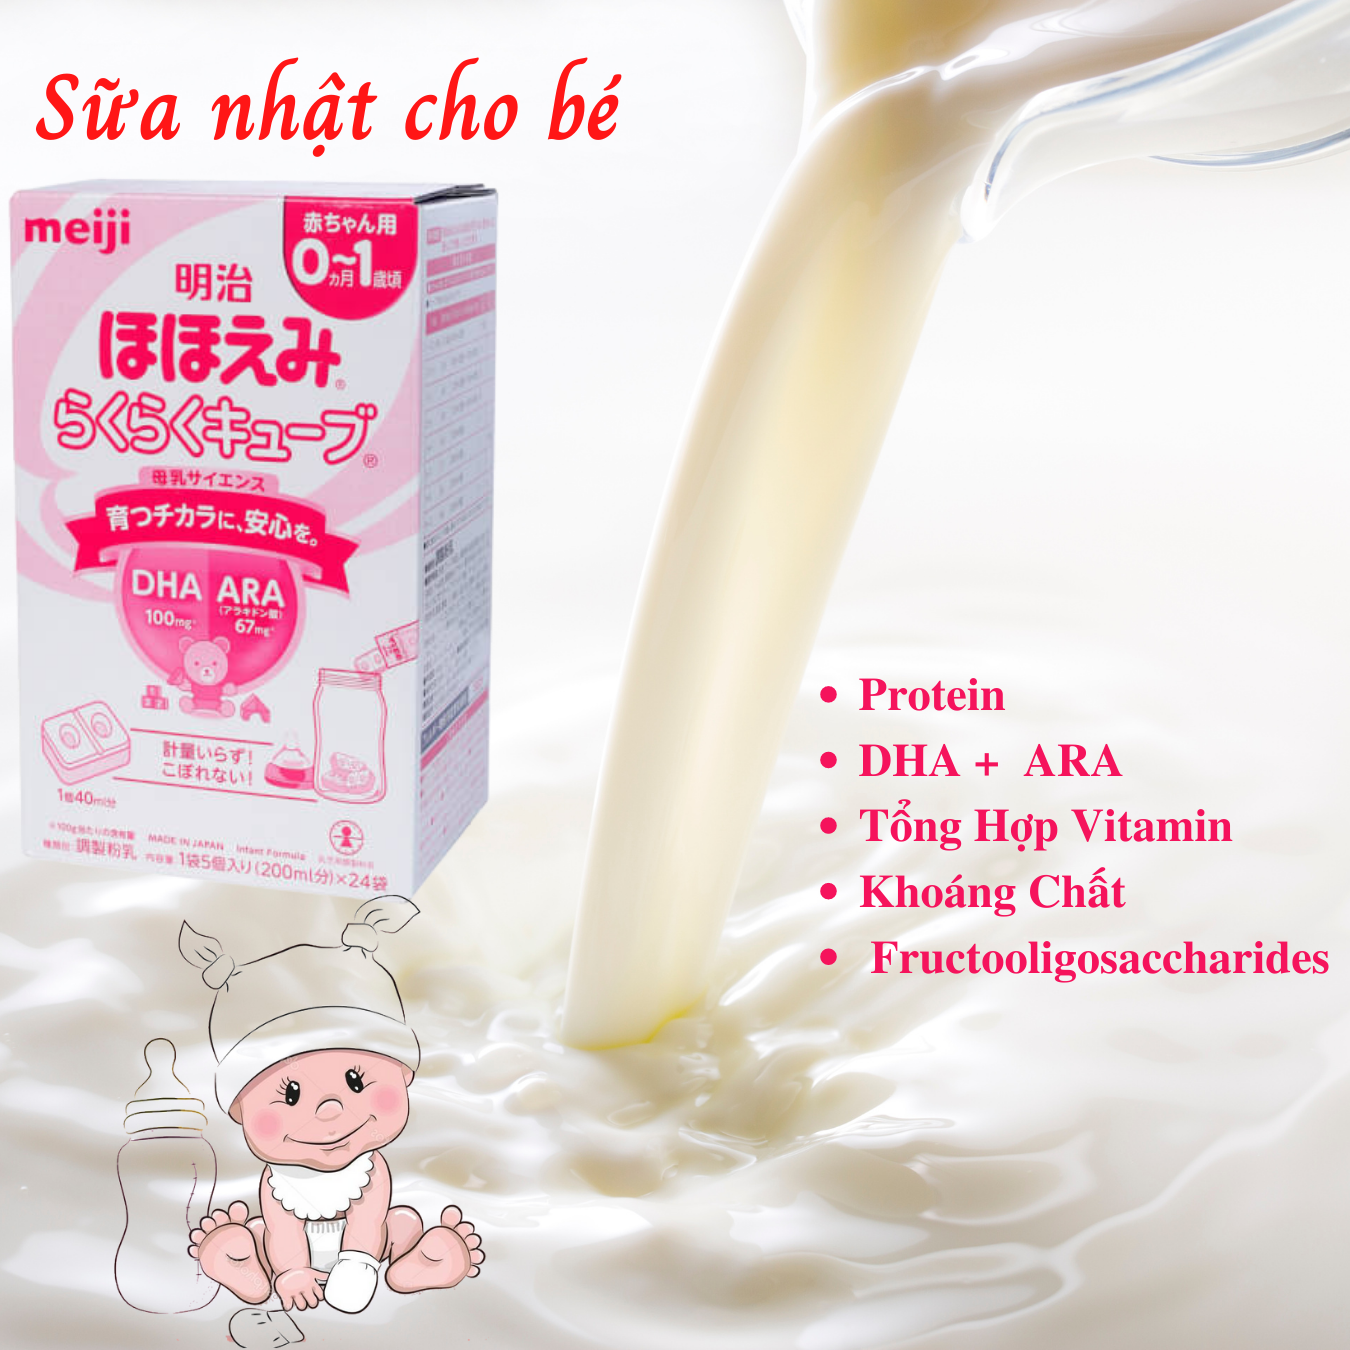 Sữa cho trẻ sơ sinh 0-1 tuổi Meiji Nhật giàu dưỡng chất kèm DHA giúp phát triển cân đối chiều cao, cân nặng, trí não cho bé - Massel Official